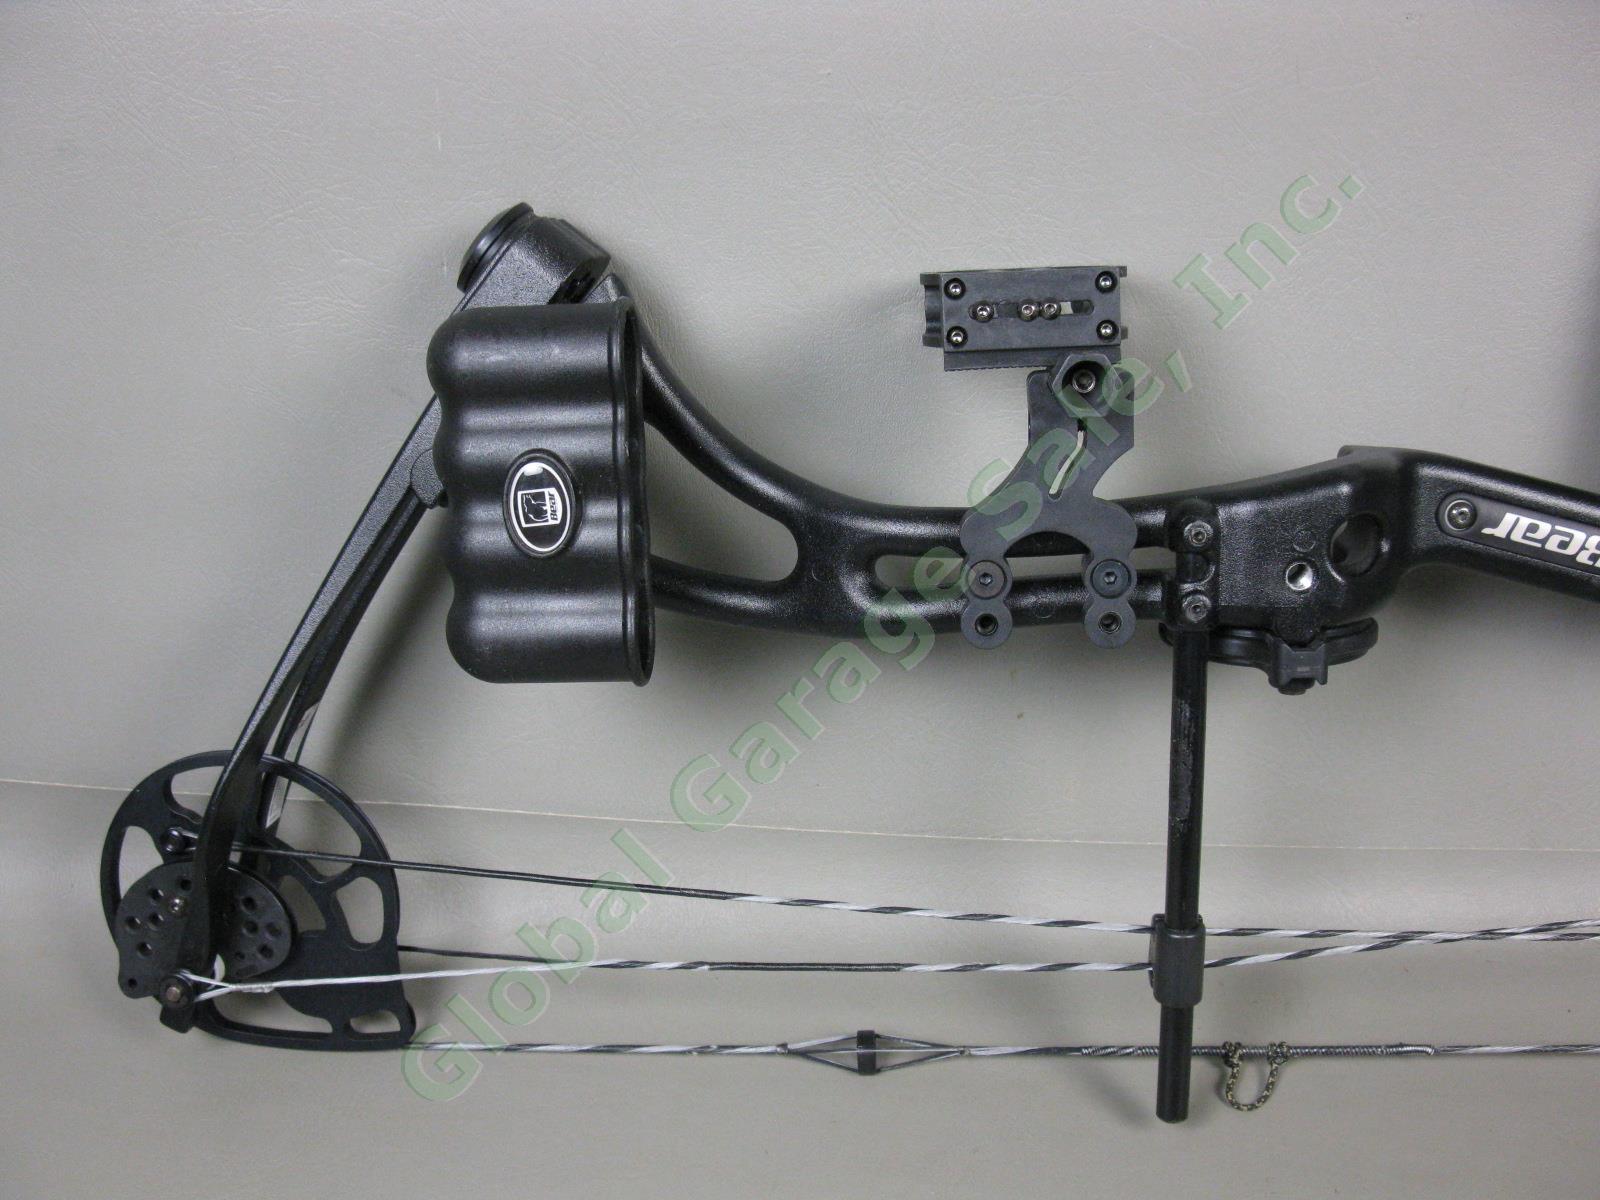 Bear Apprentice 3 RH Compound Bow DL22 PW50lb# SL48-3/8 BCL28-1/2 Arrow Case Lot 5